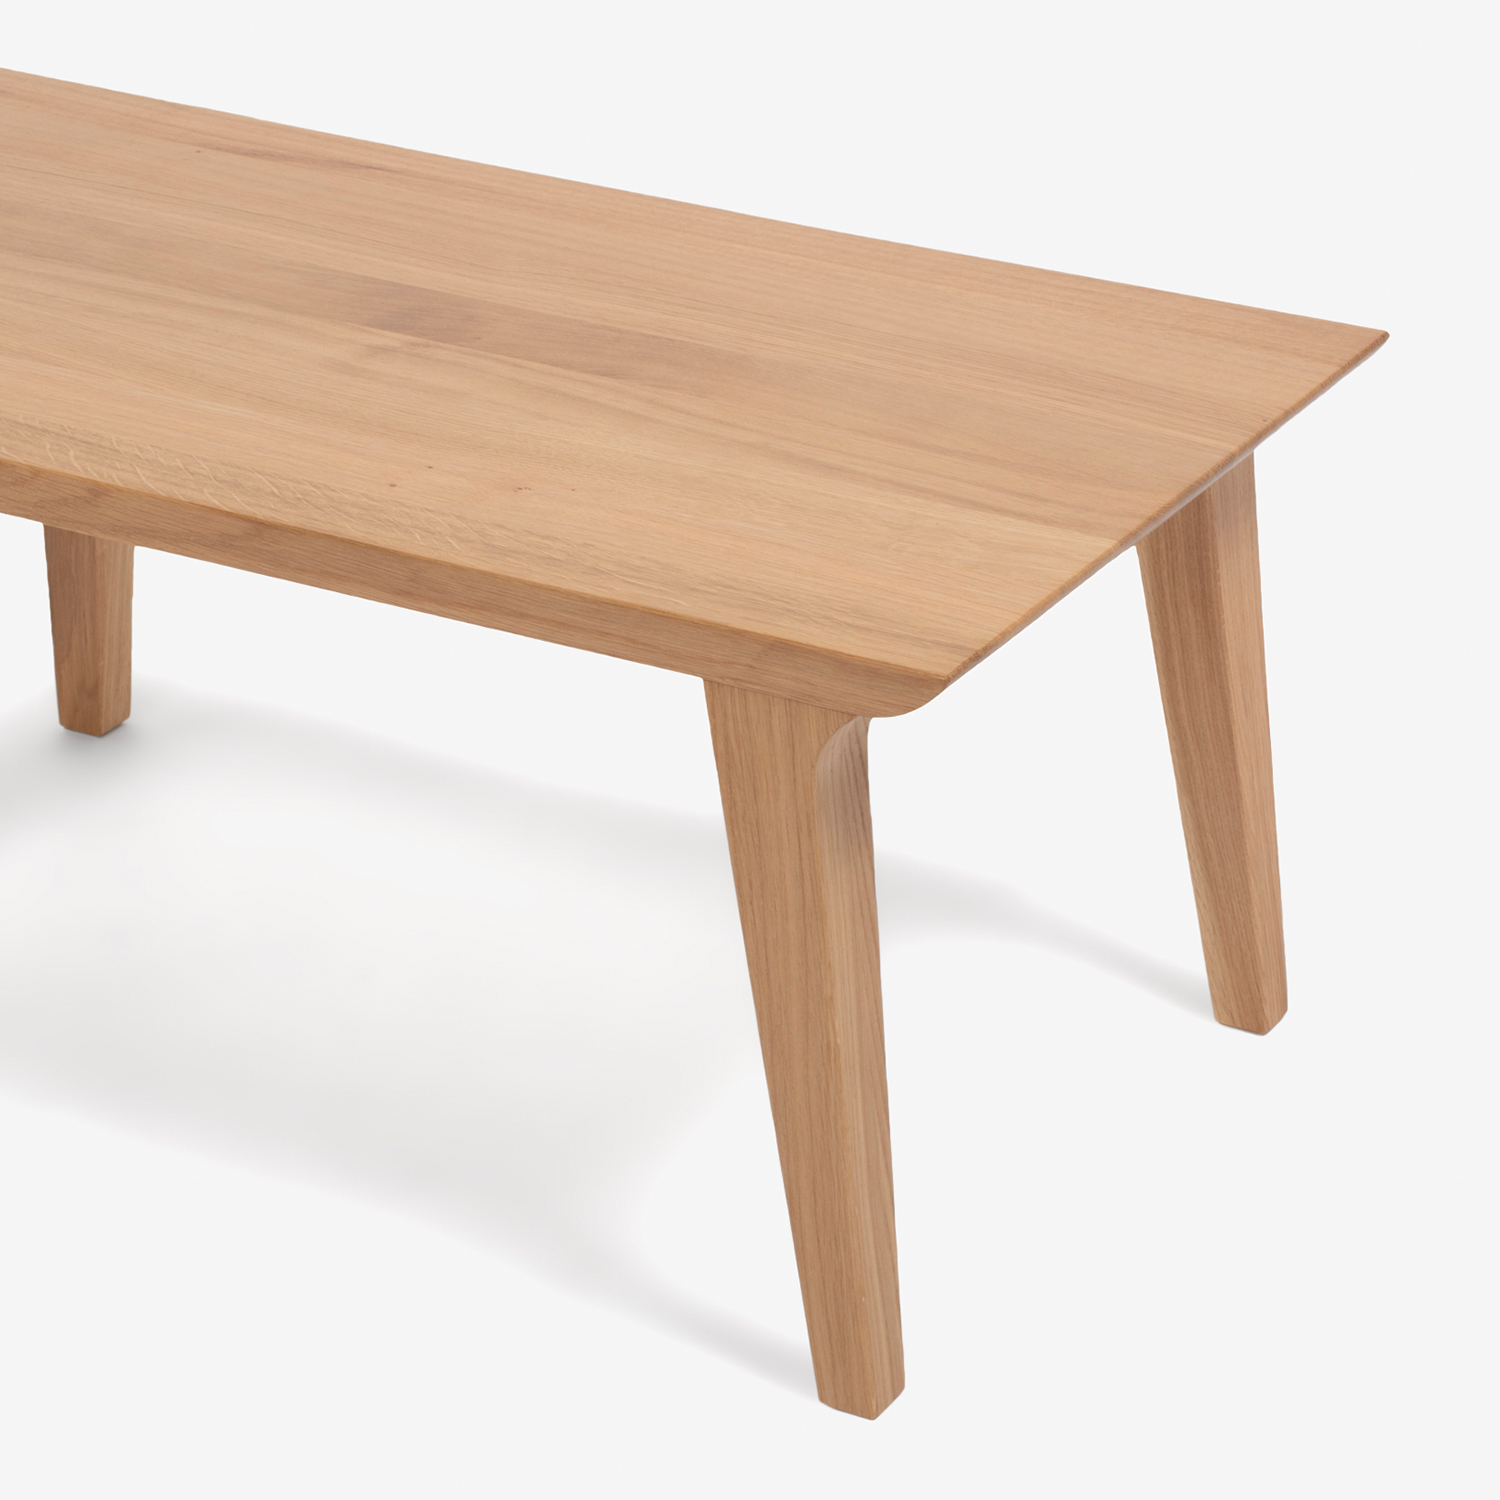 センターテーブル「ハイヒール」幅120cm オーク材 ホワイトオーク色【決算セールのため40%OFF】